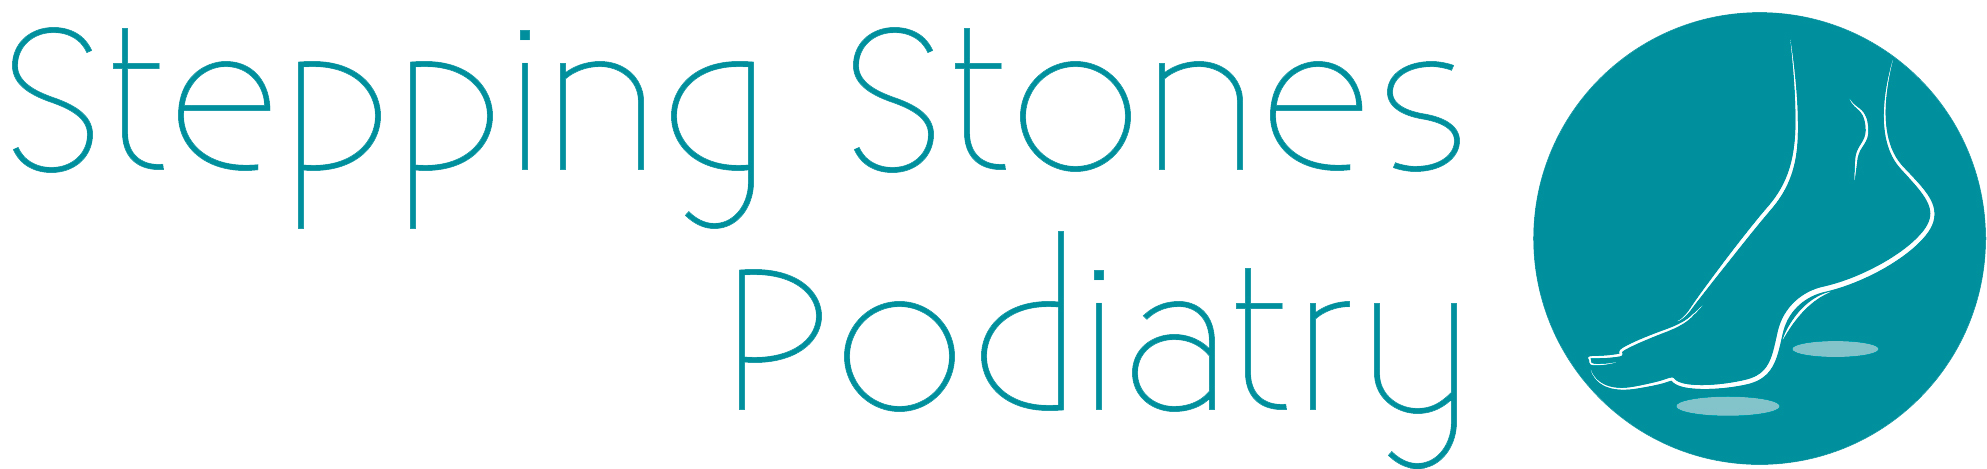 Stepping Stones Podiatry main logo